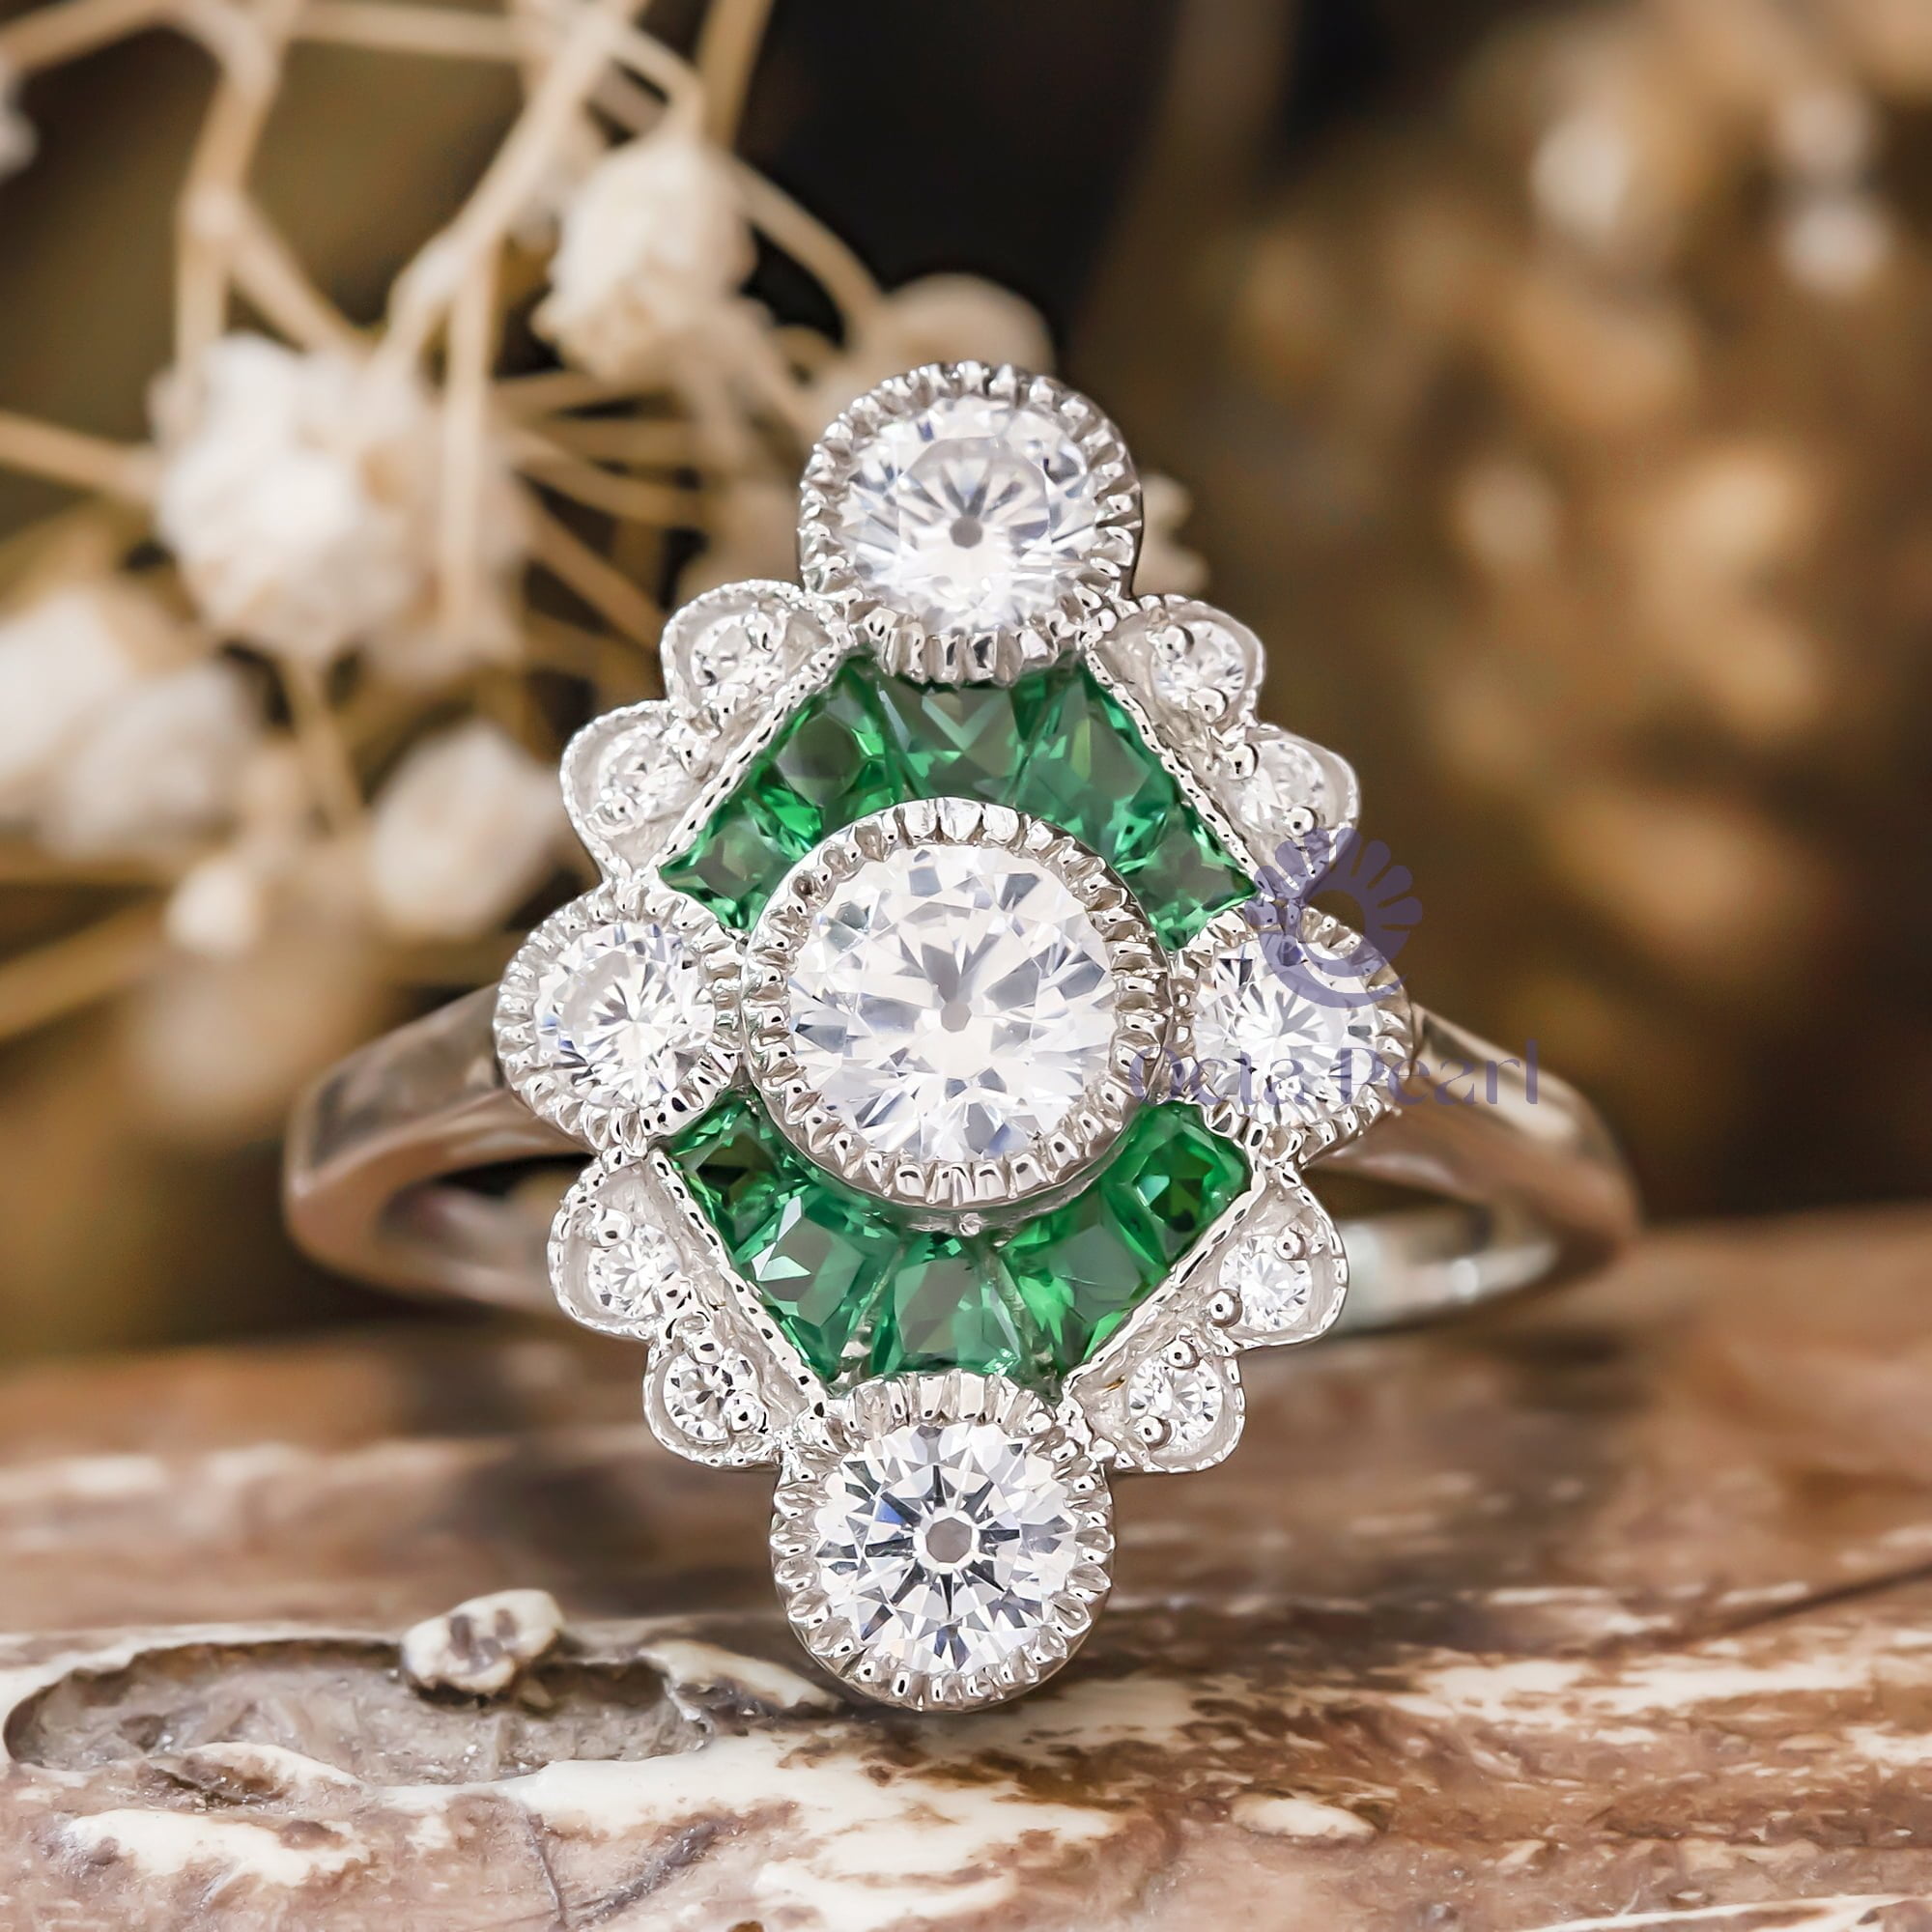 5 MM White Round Cut With Green Baguette Cut CZ Stone Milgrain Bezel Set Art Nouveau Edwardian Ring